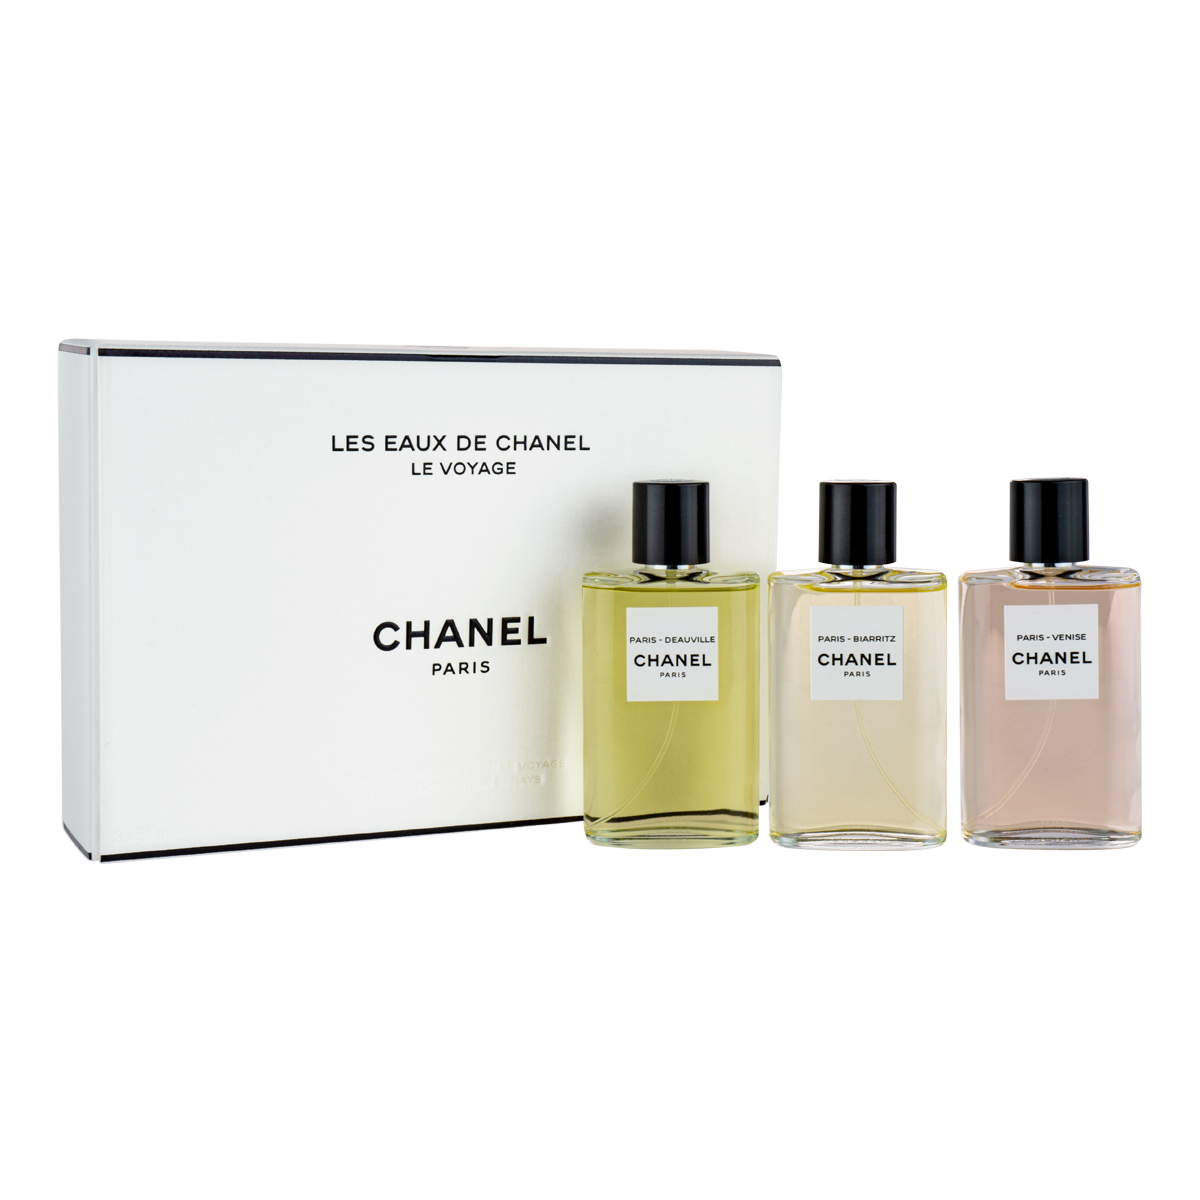 Chanel Les Eaux de Chanel Le Voyage 3 Piece Gift Set | Beautybuys Ireland